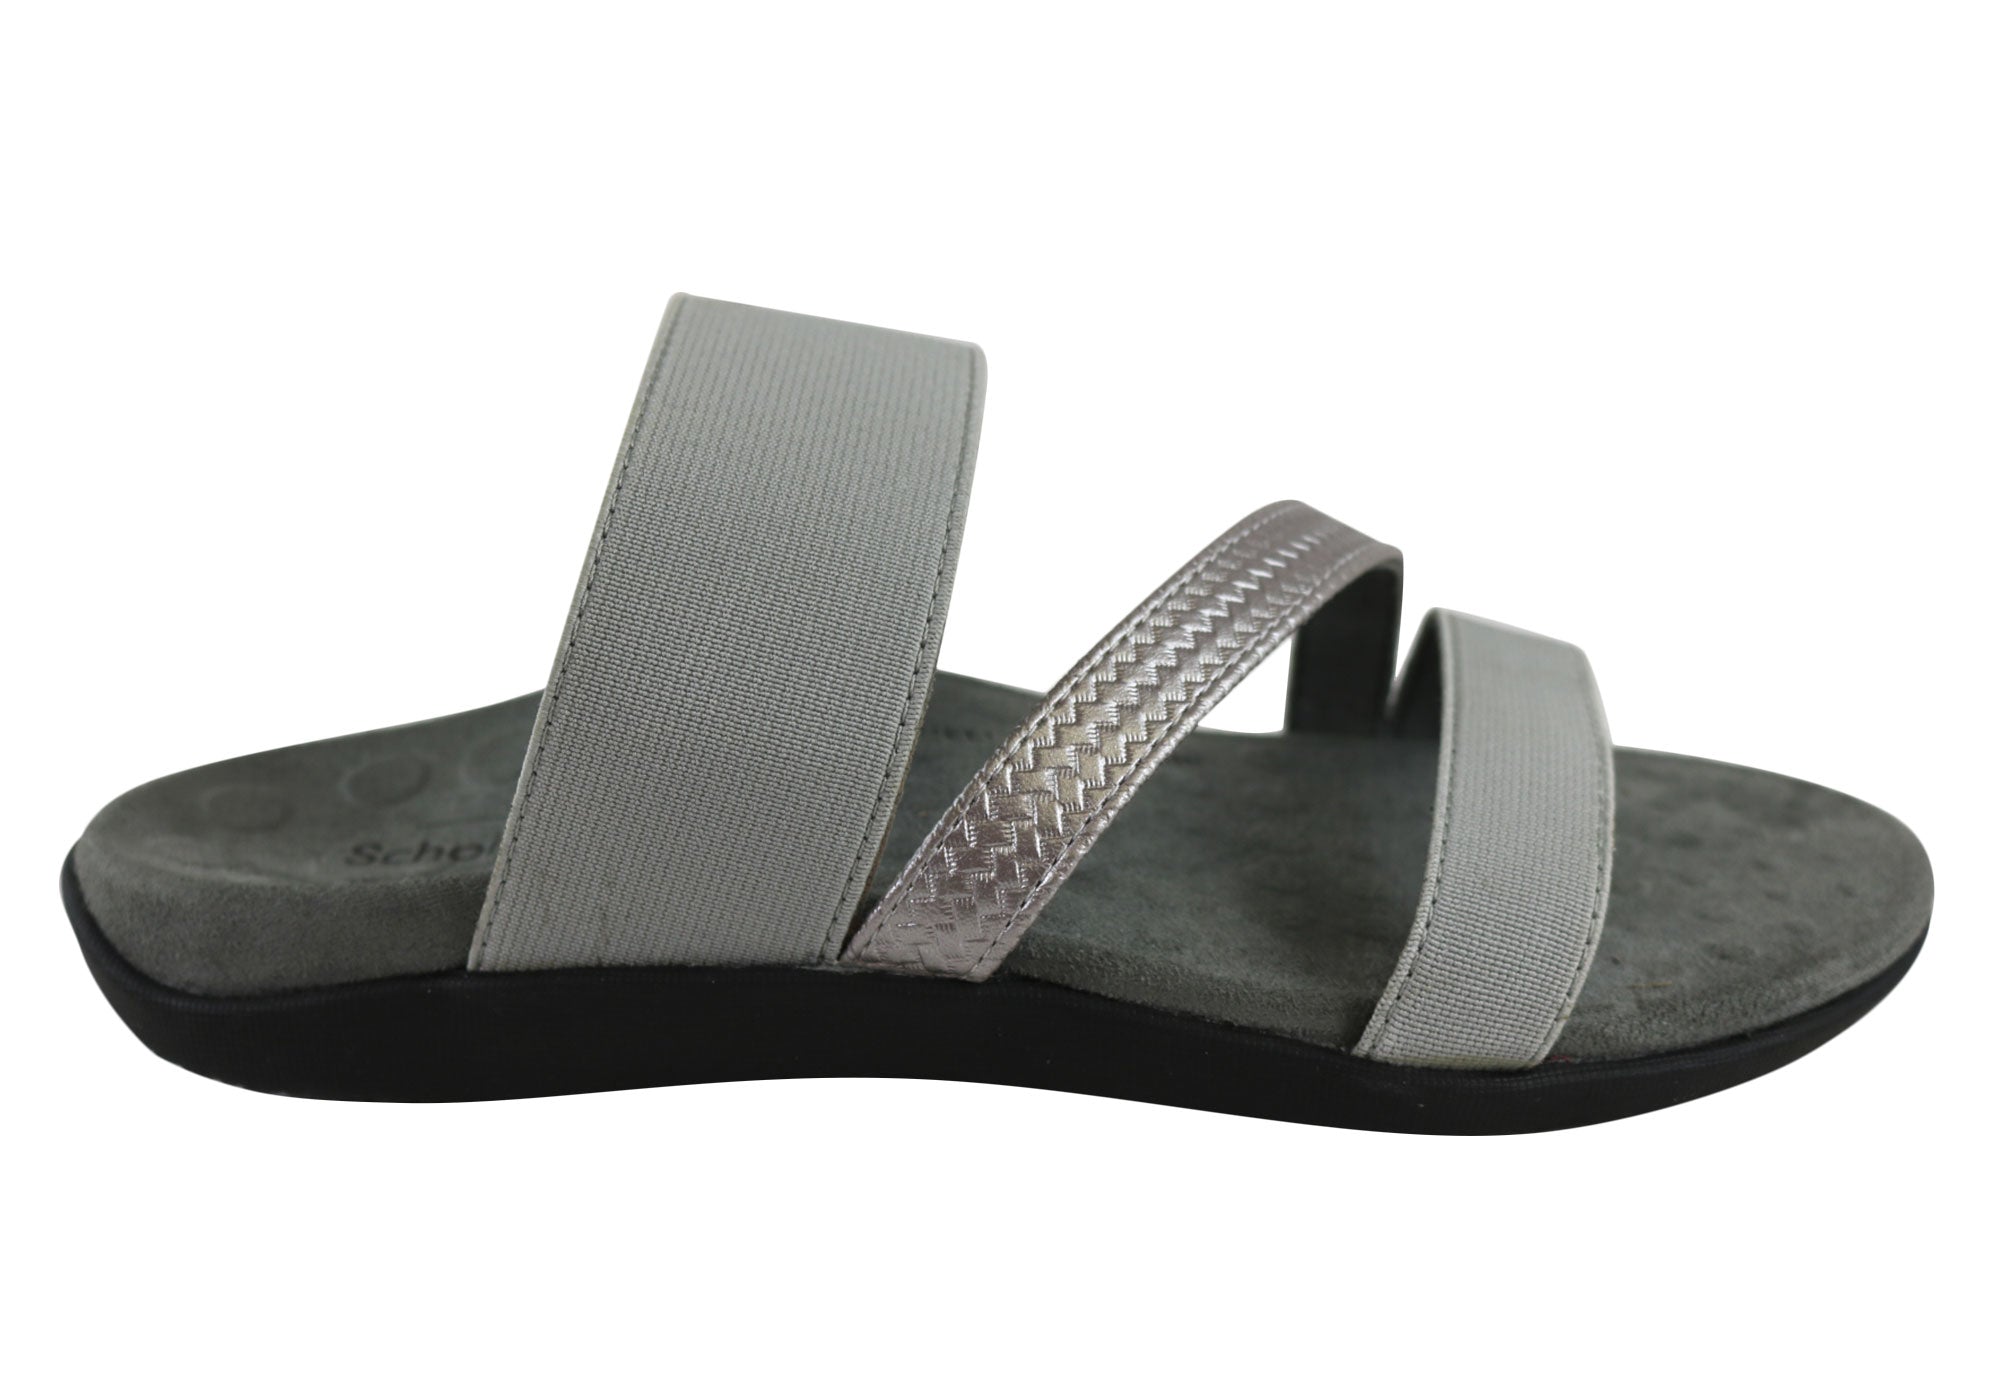 women's comfort slip on sandals